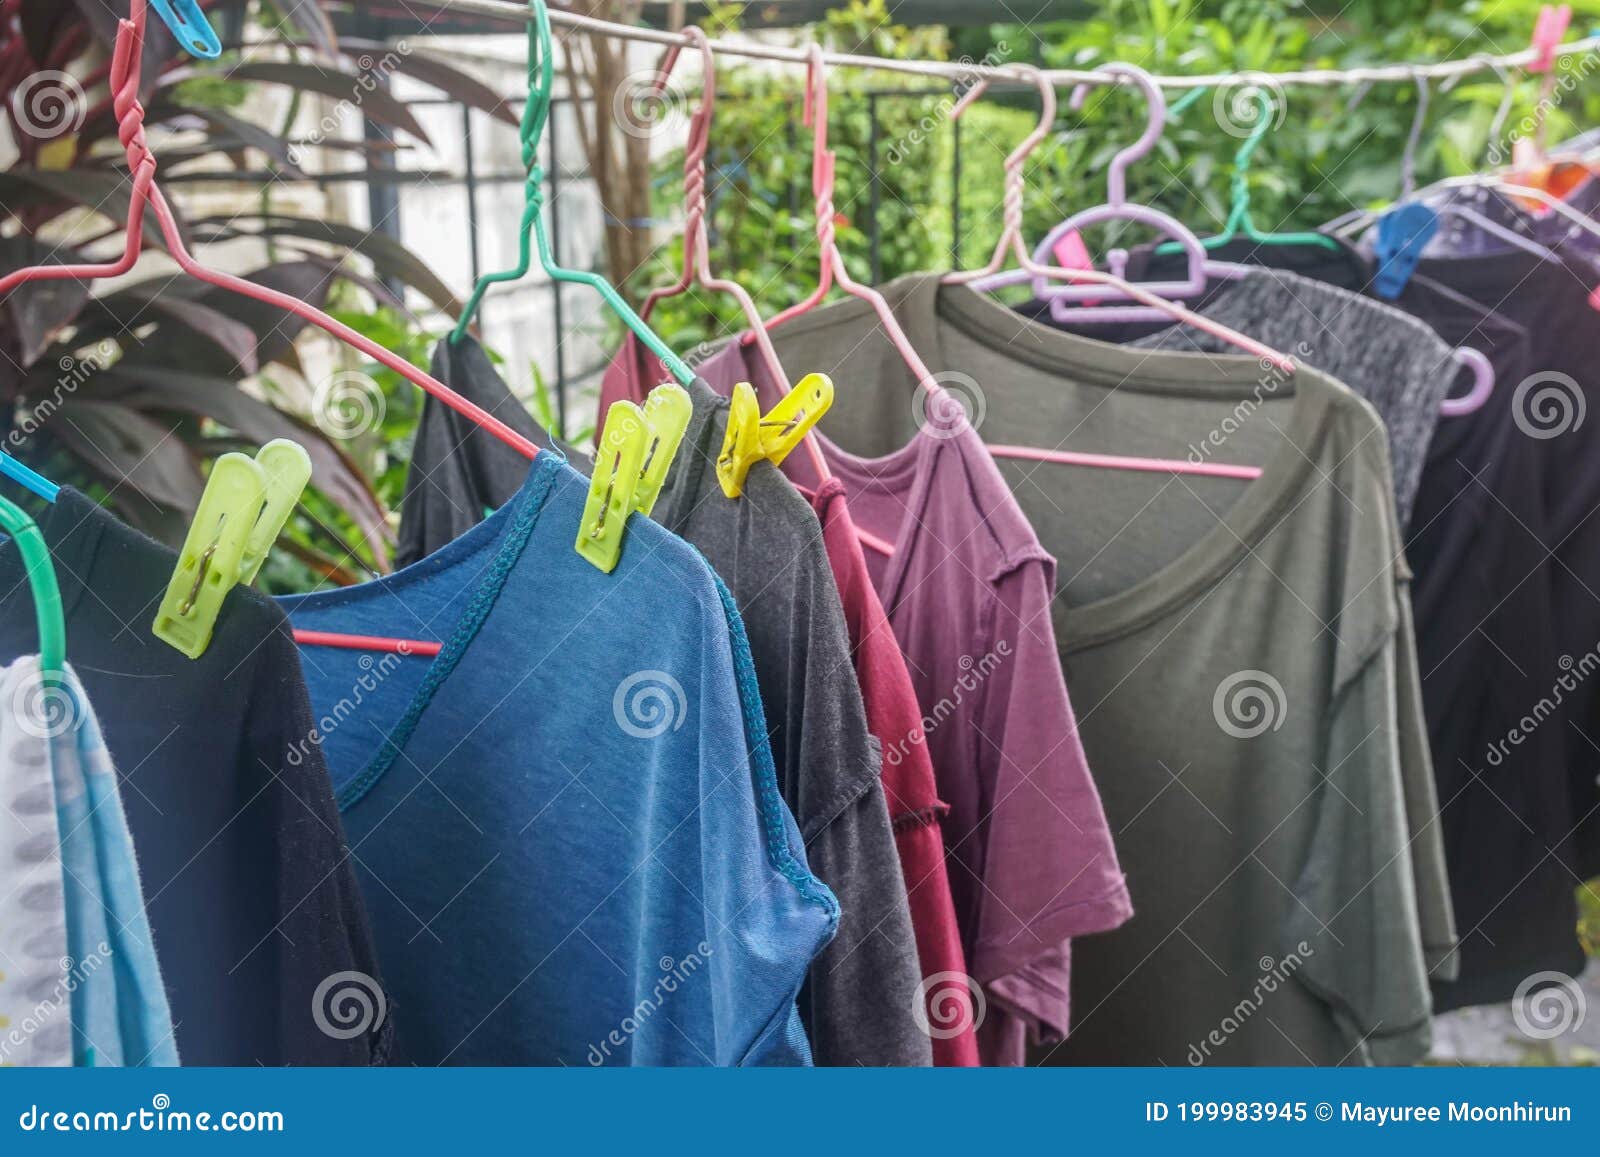 alumno energía Terrible Colgar Camisetas Mojadas En Perchas De Ropa Con Estacas Coloridas Al Aire  Libre Para Secarse Imagen de archivo - Imagen de estante, ocasional:  199983945